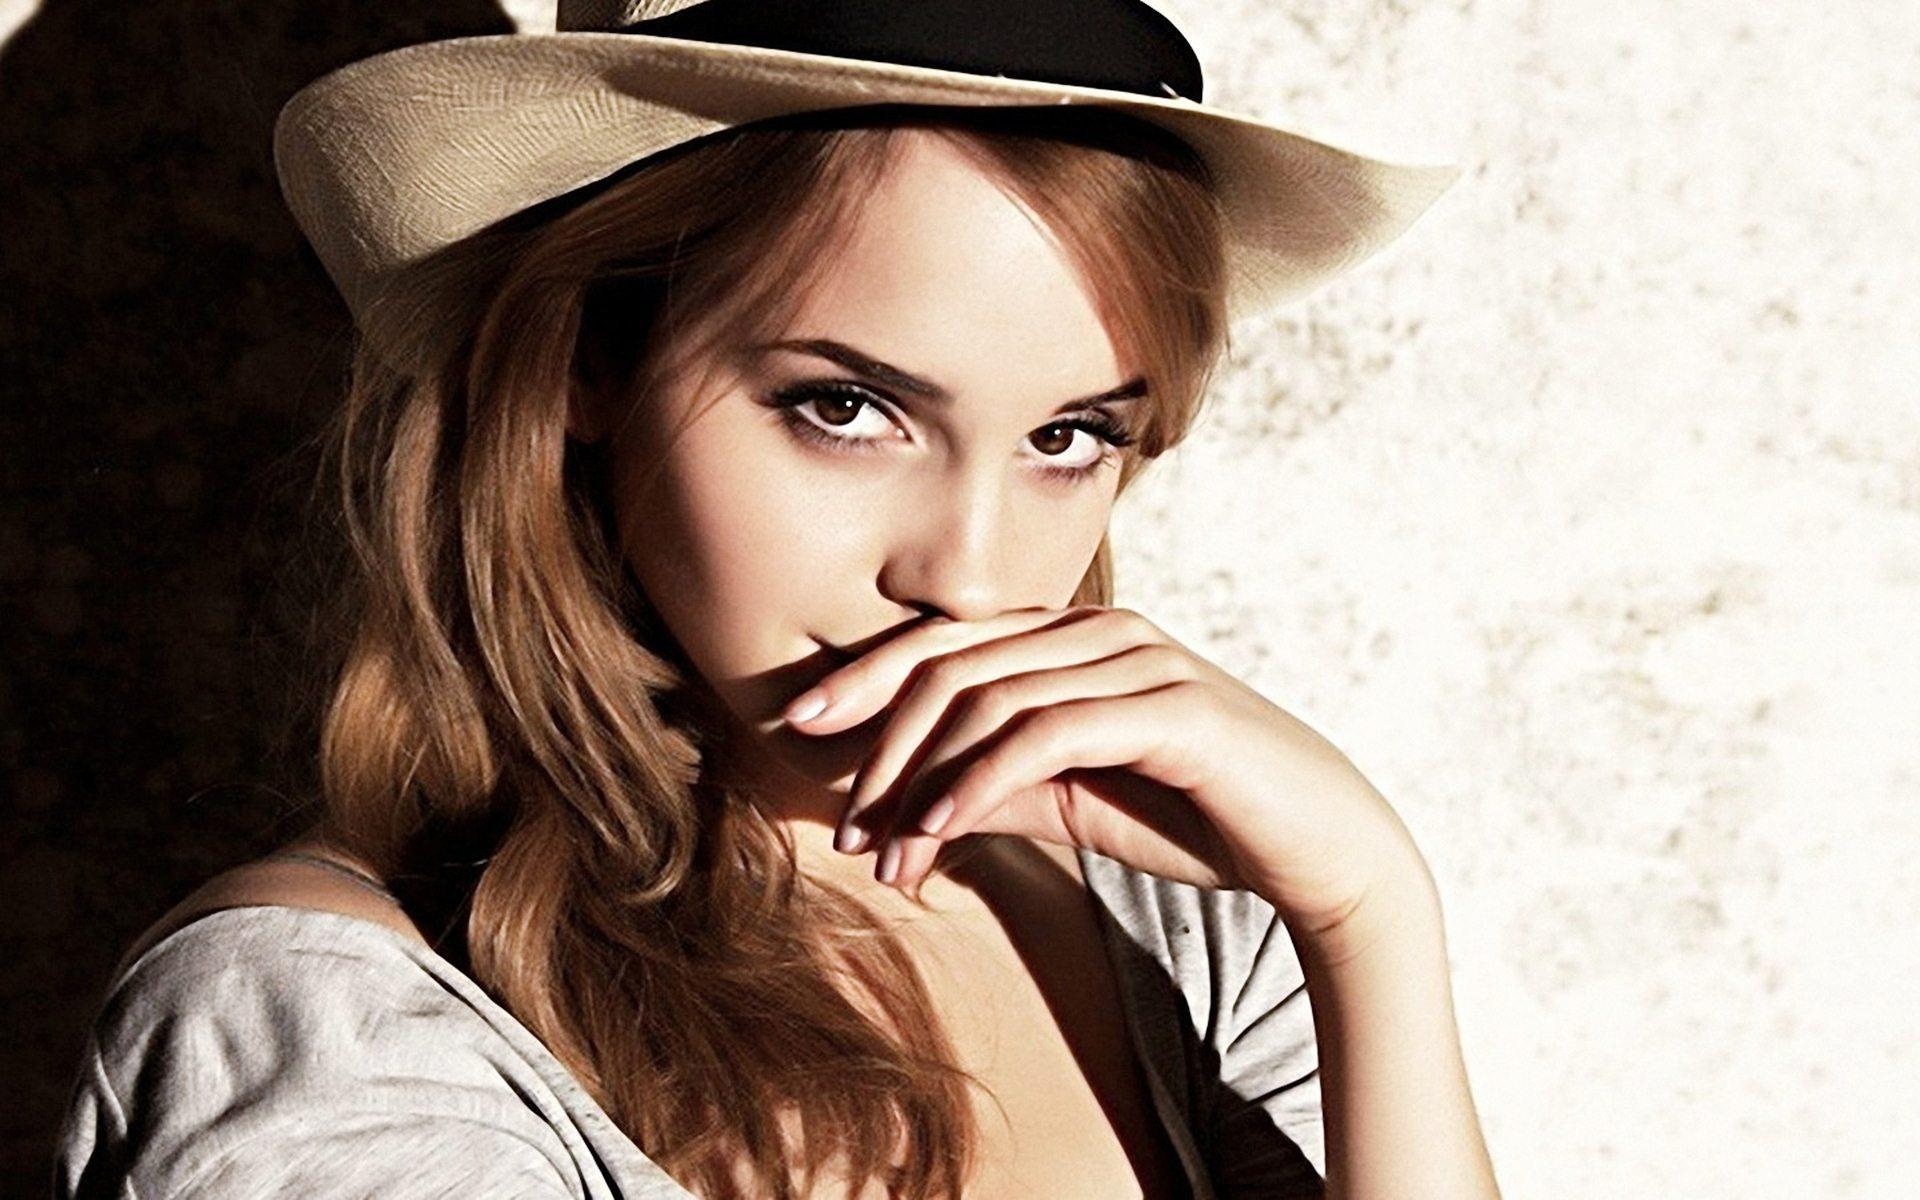 Emma Watson, Top wallpapers, Emma Watson images, Fan-favorite backgrounds, 1920x1200 HD Desktop